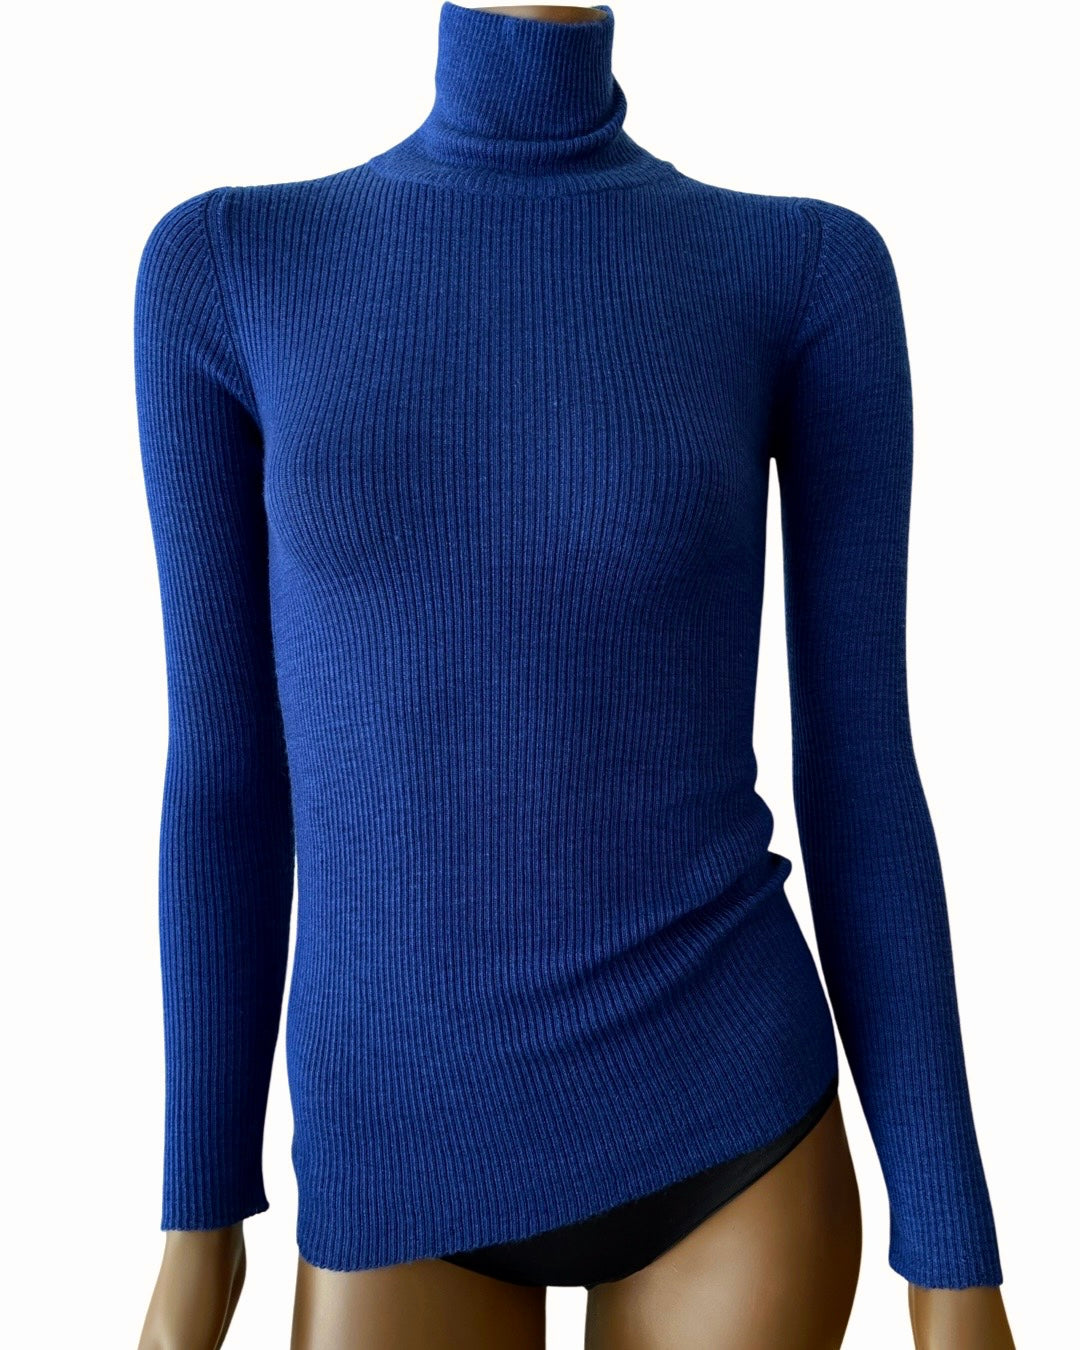 Feather weight cashmere turtleneck sweater in klein blue — Ryan